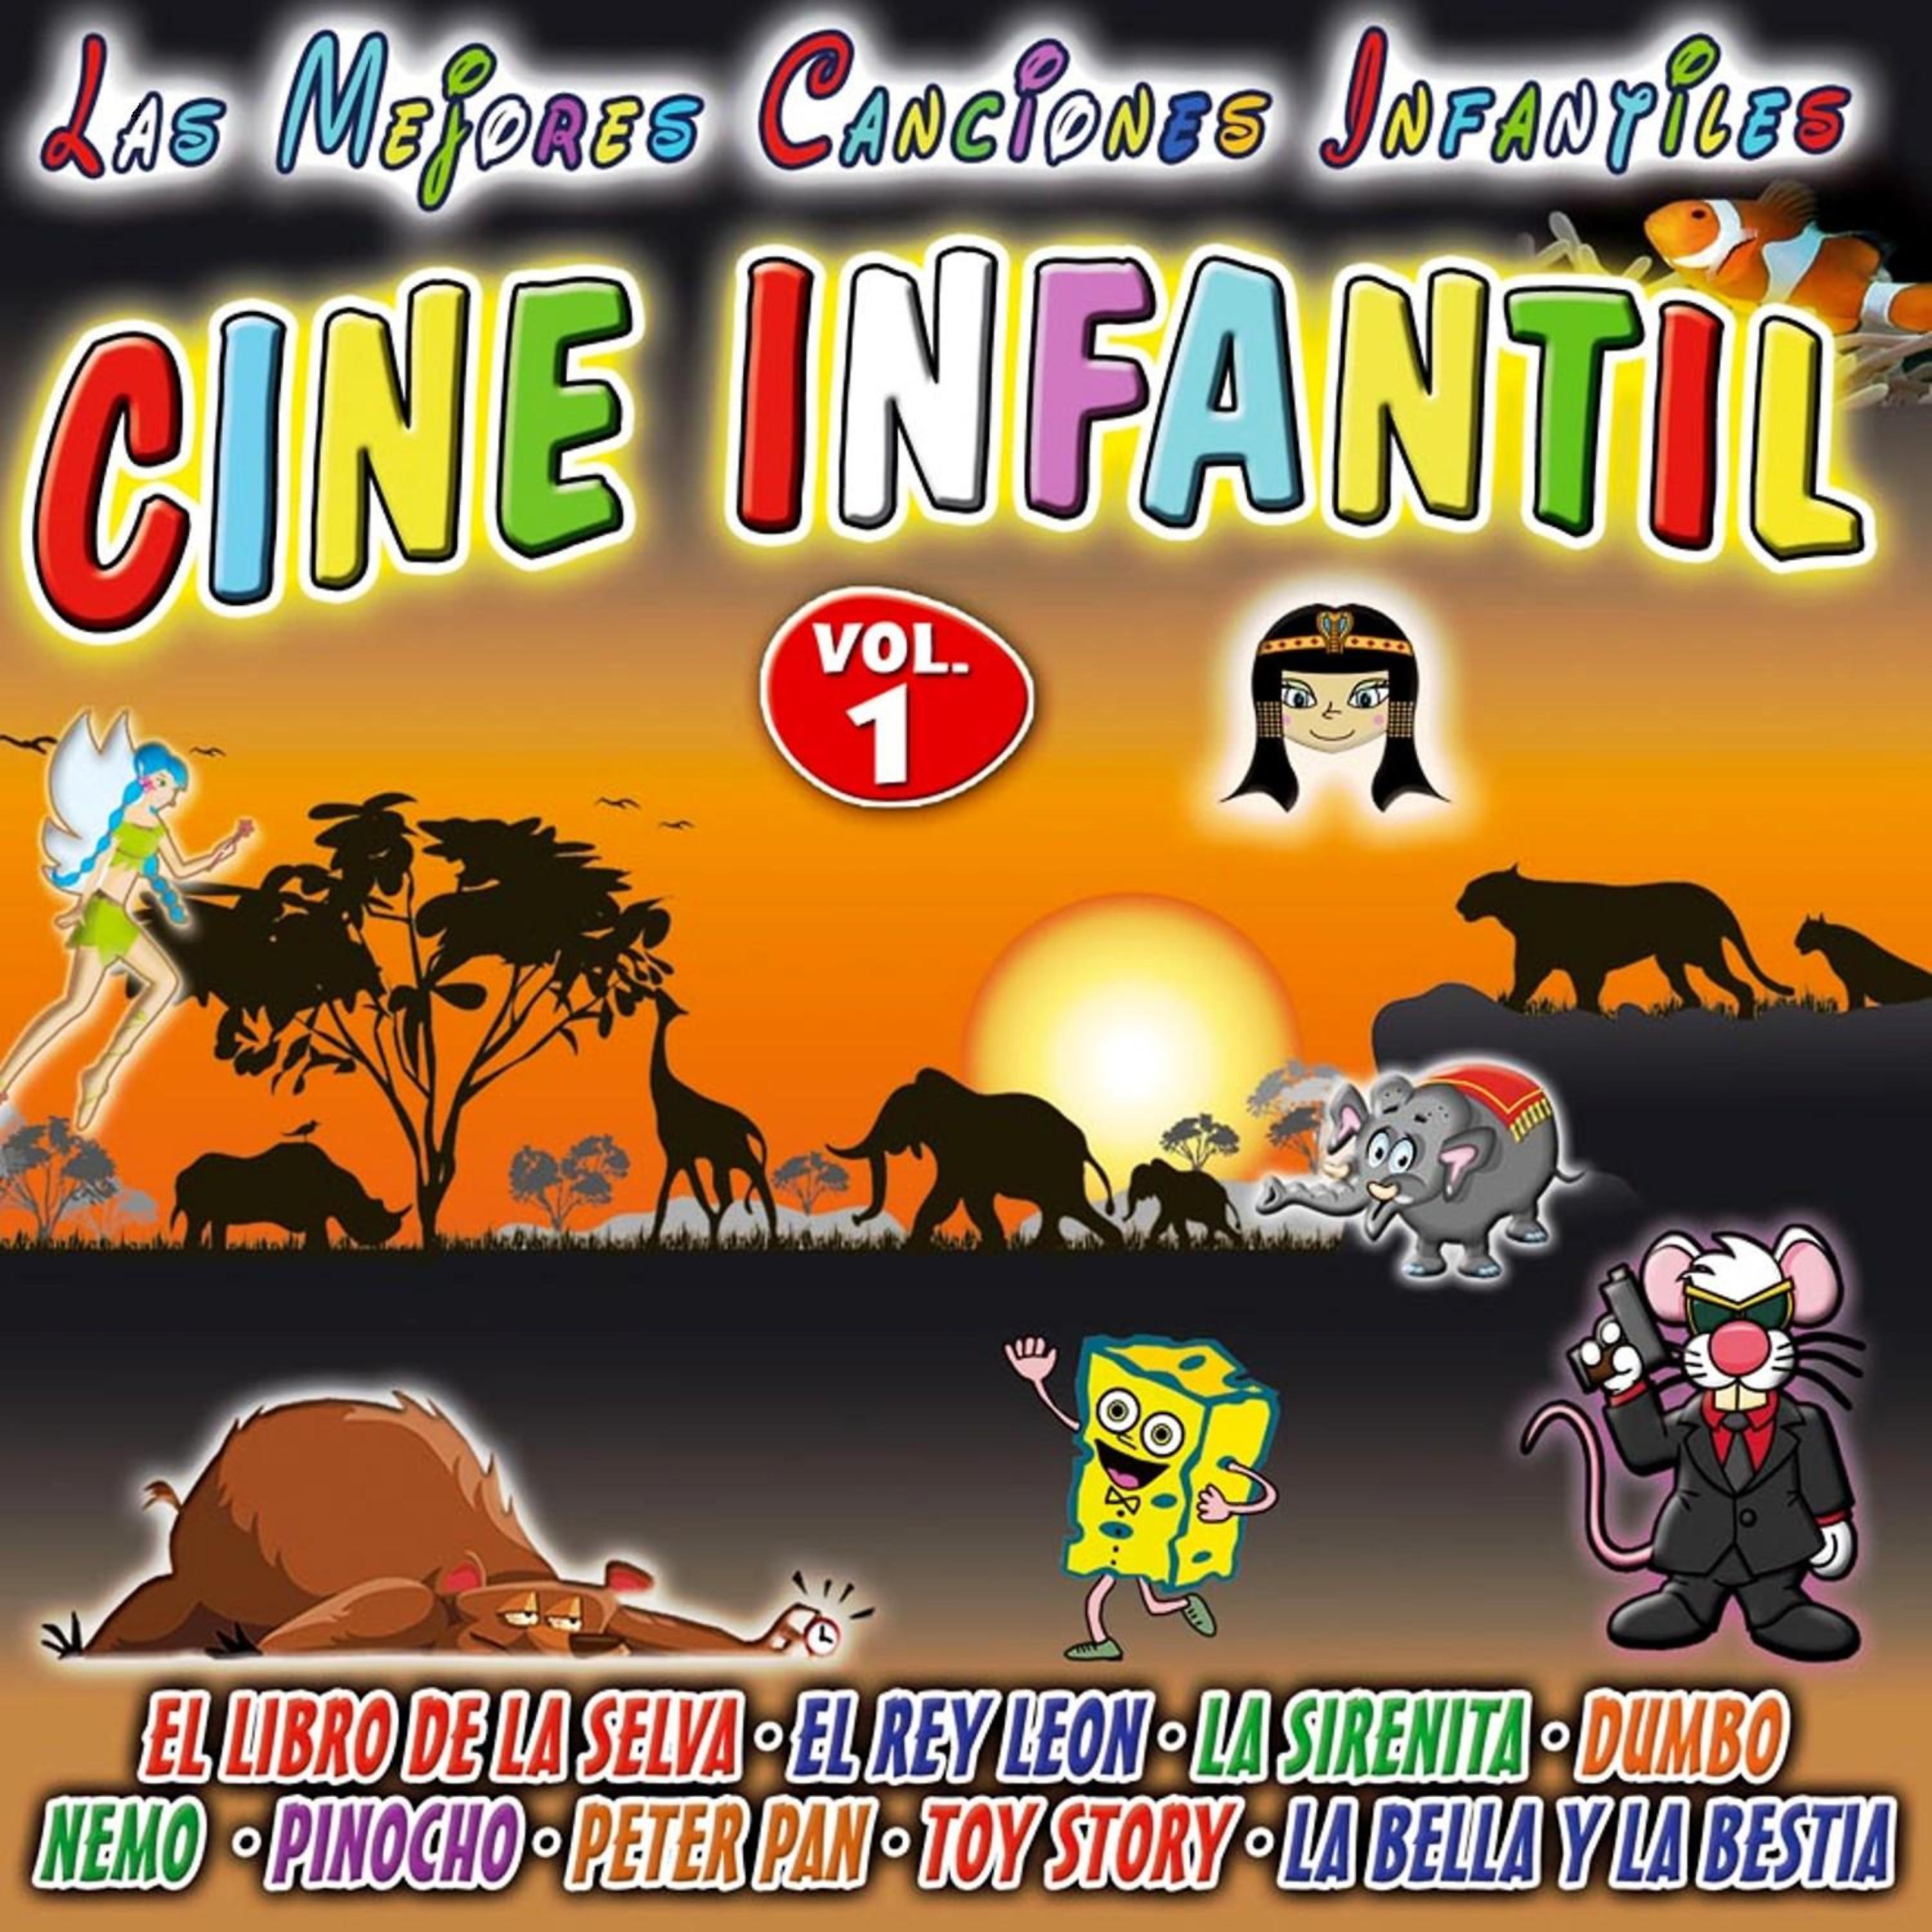 Постер альбома Peliculas De Cine Infantil